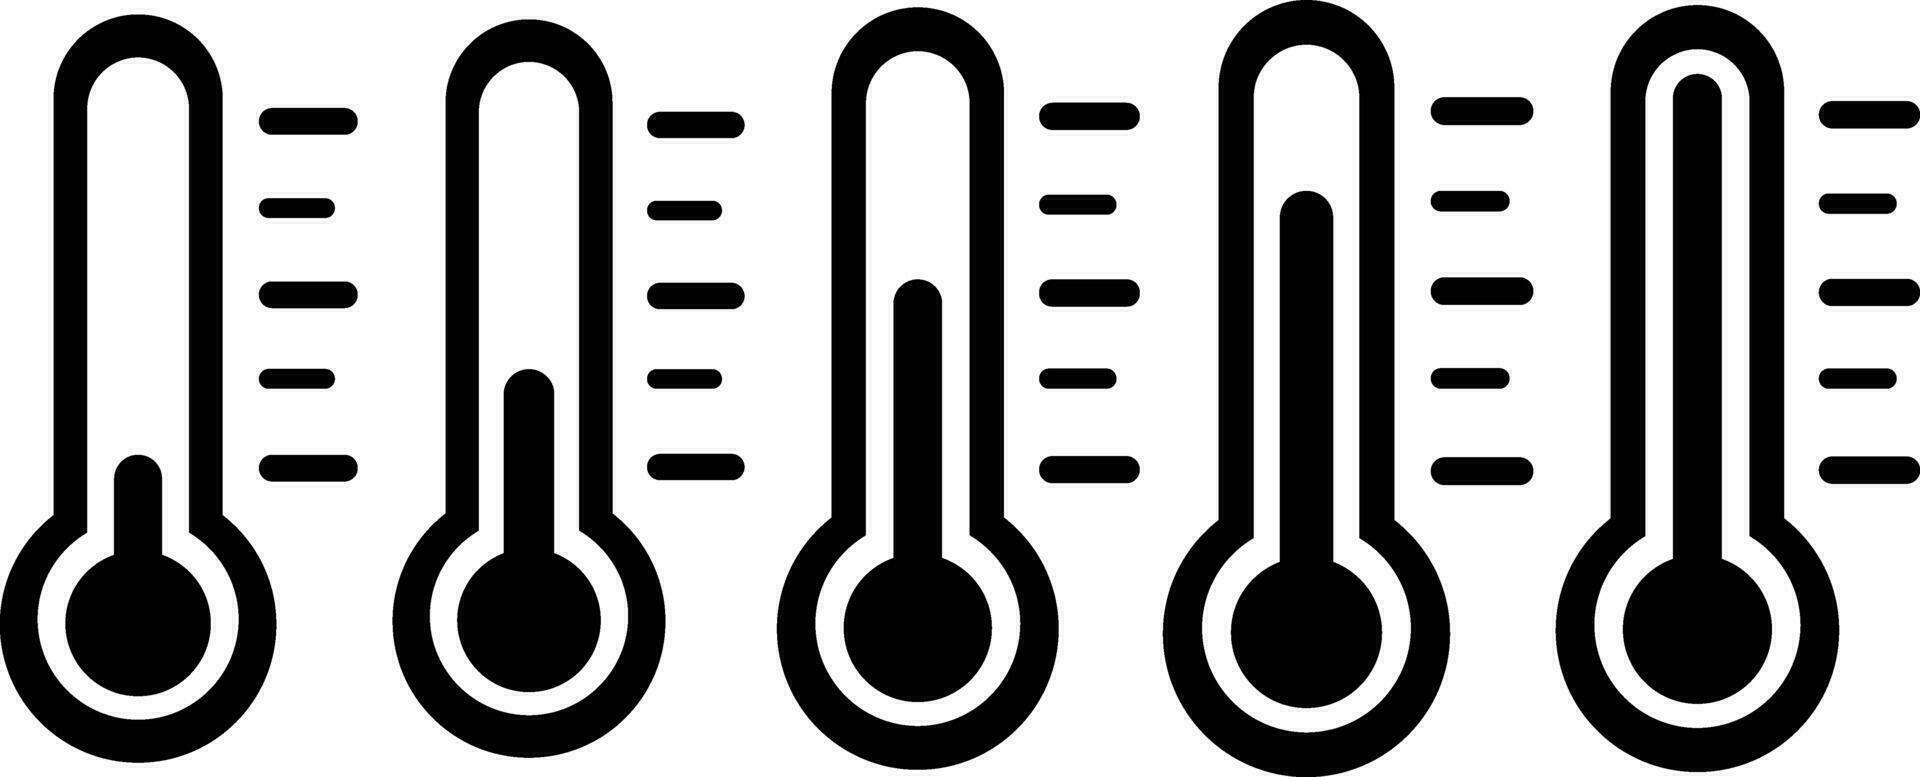 impostato termometro caldo freddo simbolo. gruppo tempo metereologico strumento cartello. collezione temperatura misurazione attrezzatura icona. temperatura scala simbolo. singolo oggetto vettore